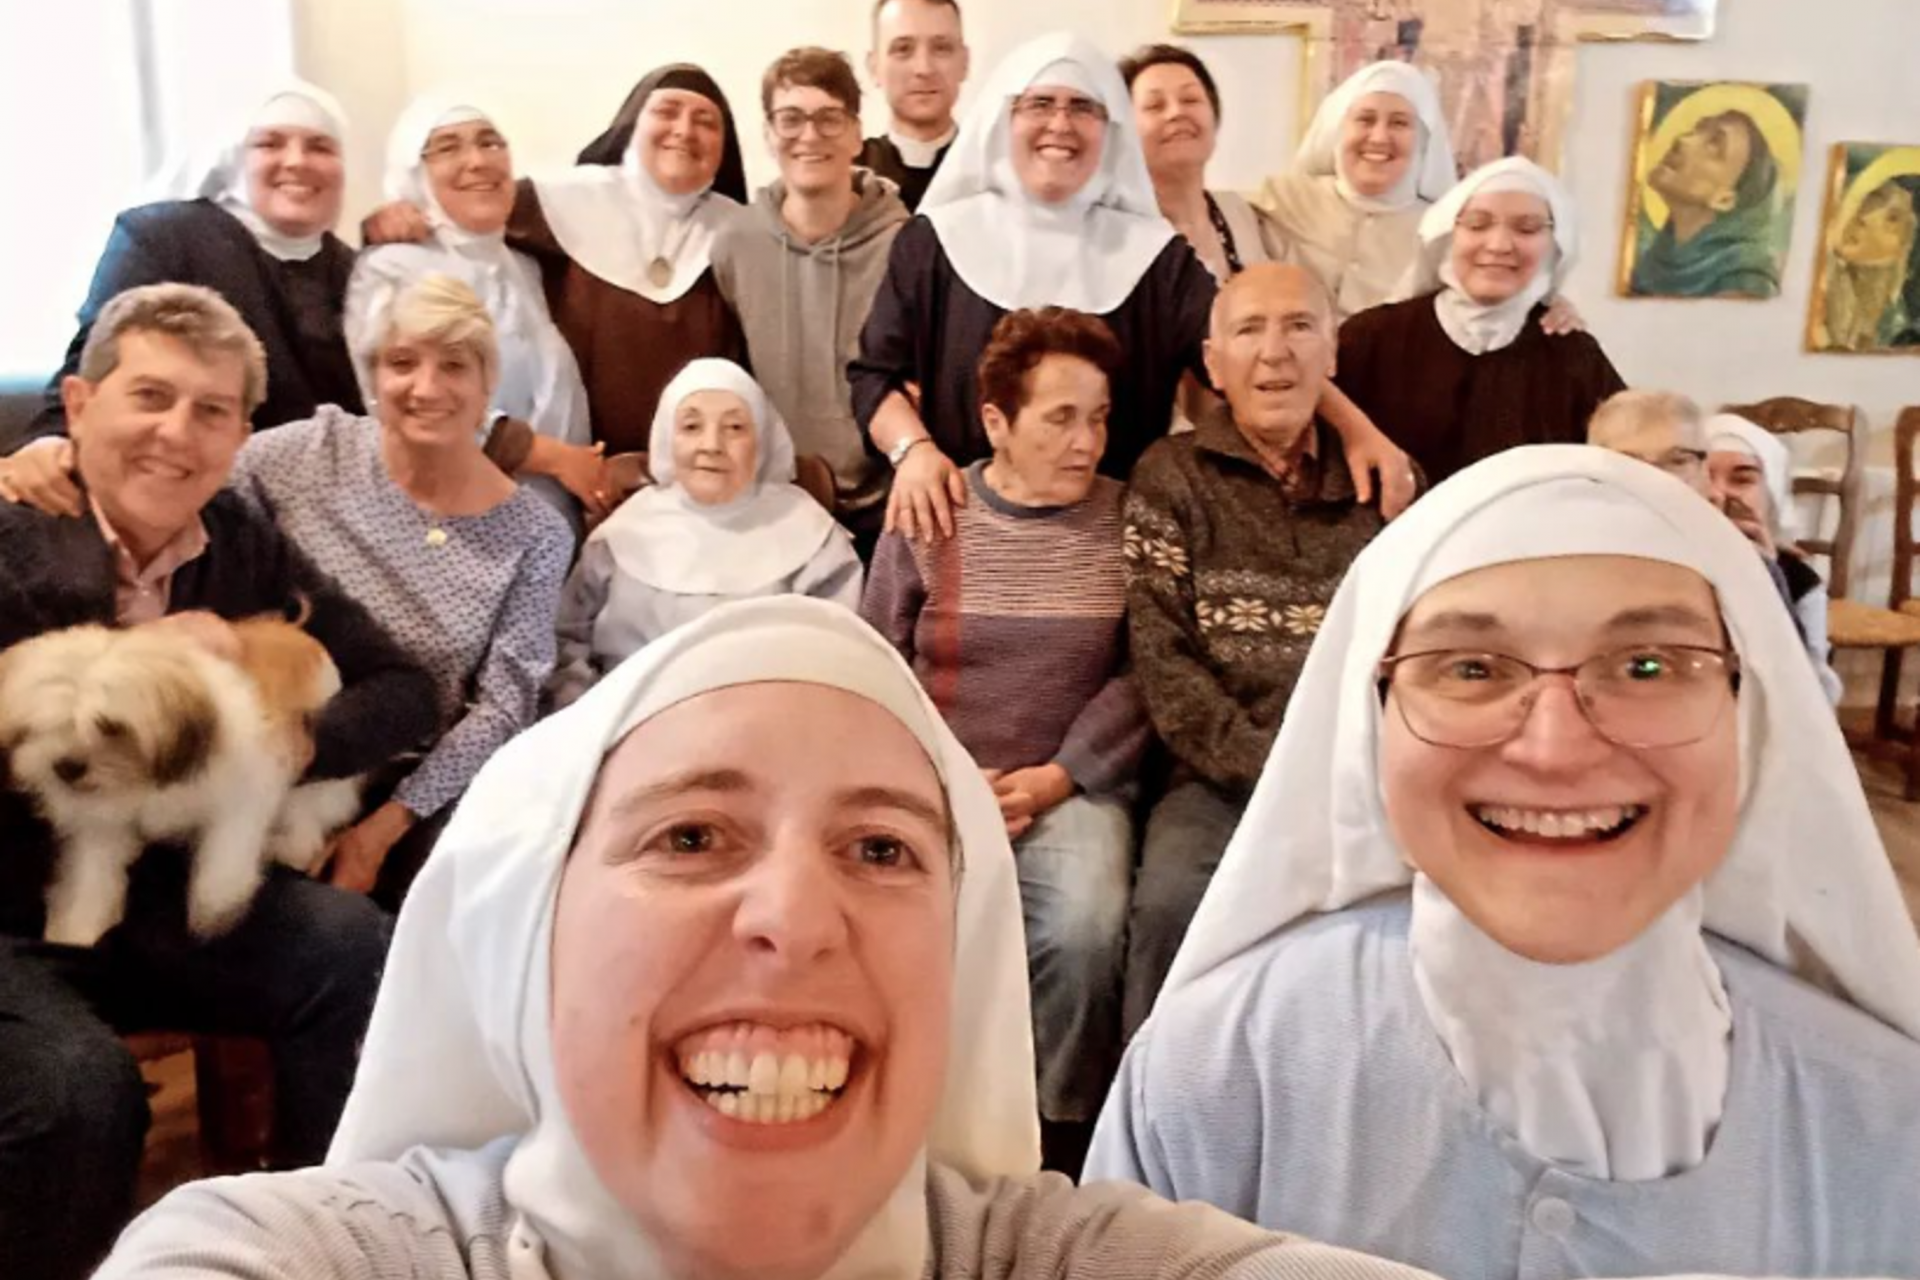 Rechazo al Vaticano, inmuebles a la venta y monjas excomulgadas: ¿qué pasa en este polémico convento español?